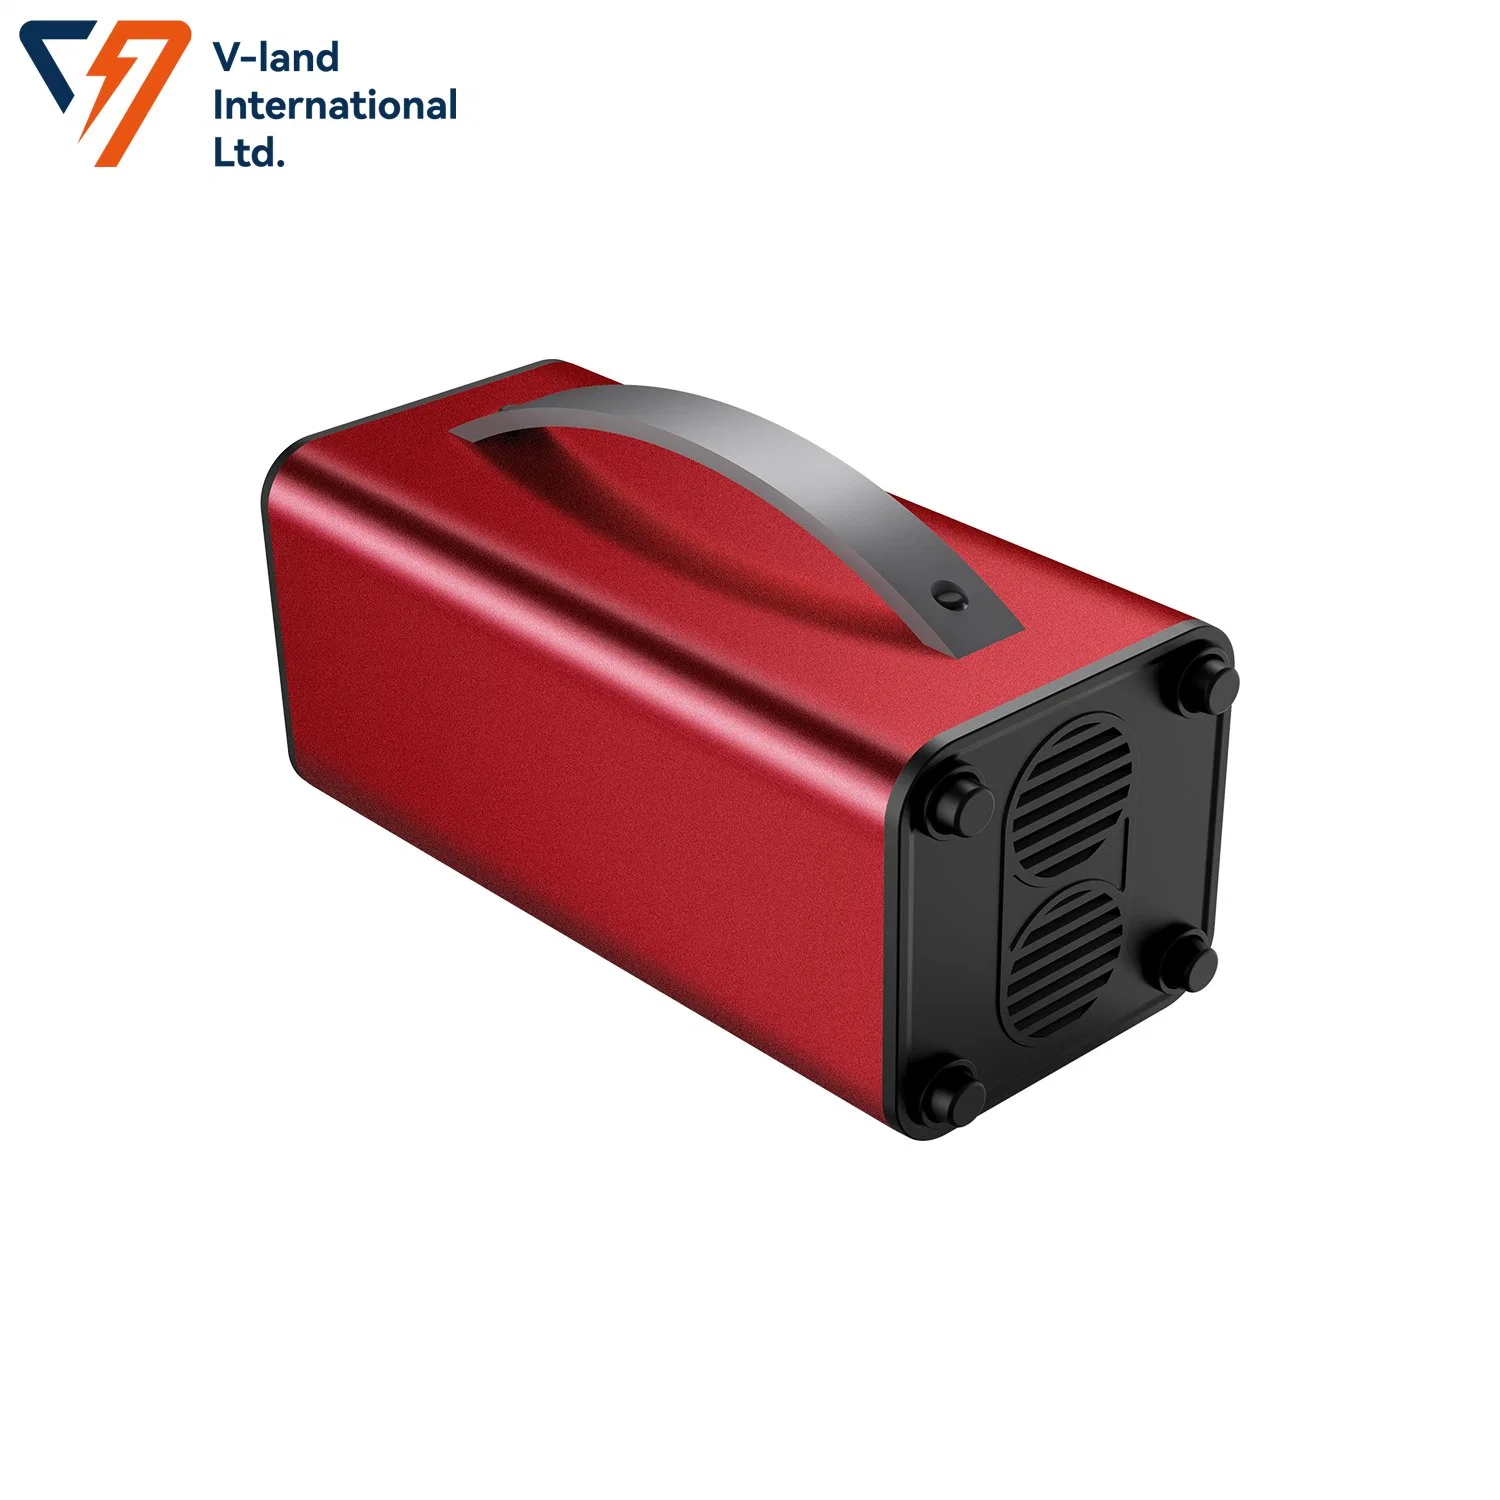 Gute Qualität tragbare Batterie Backup-Ladegerät Tragbare Energiespeicher für Reisen